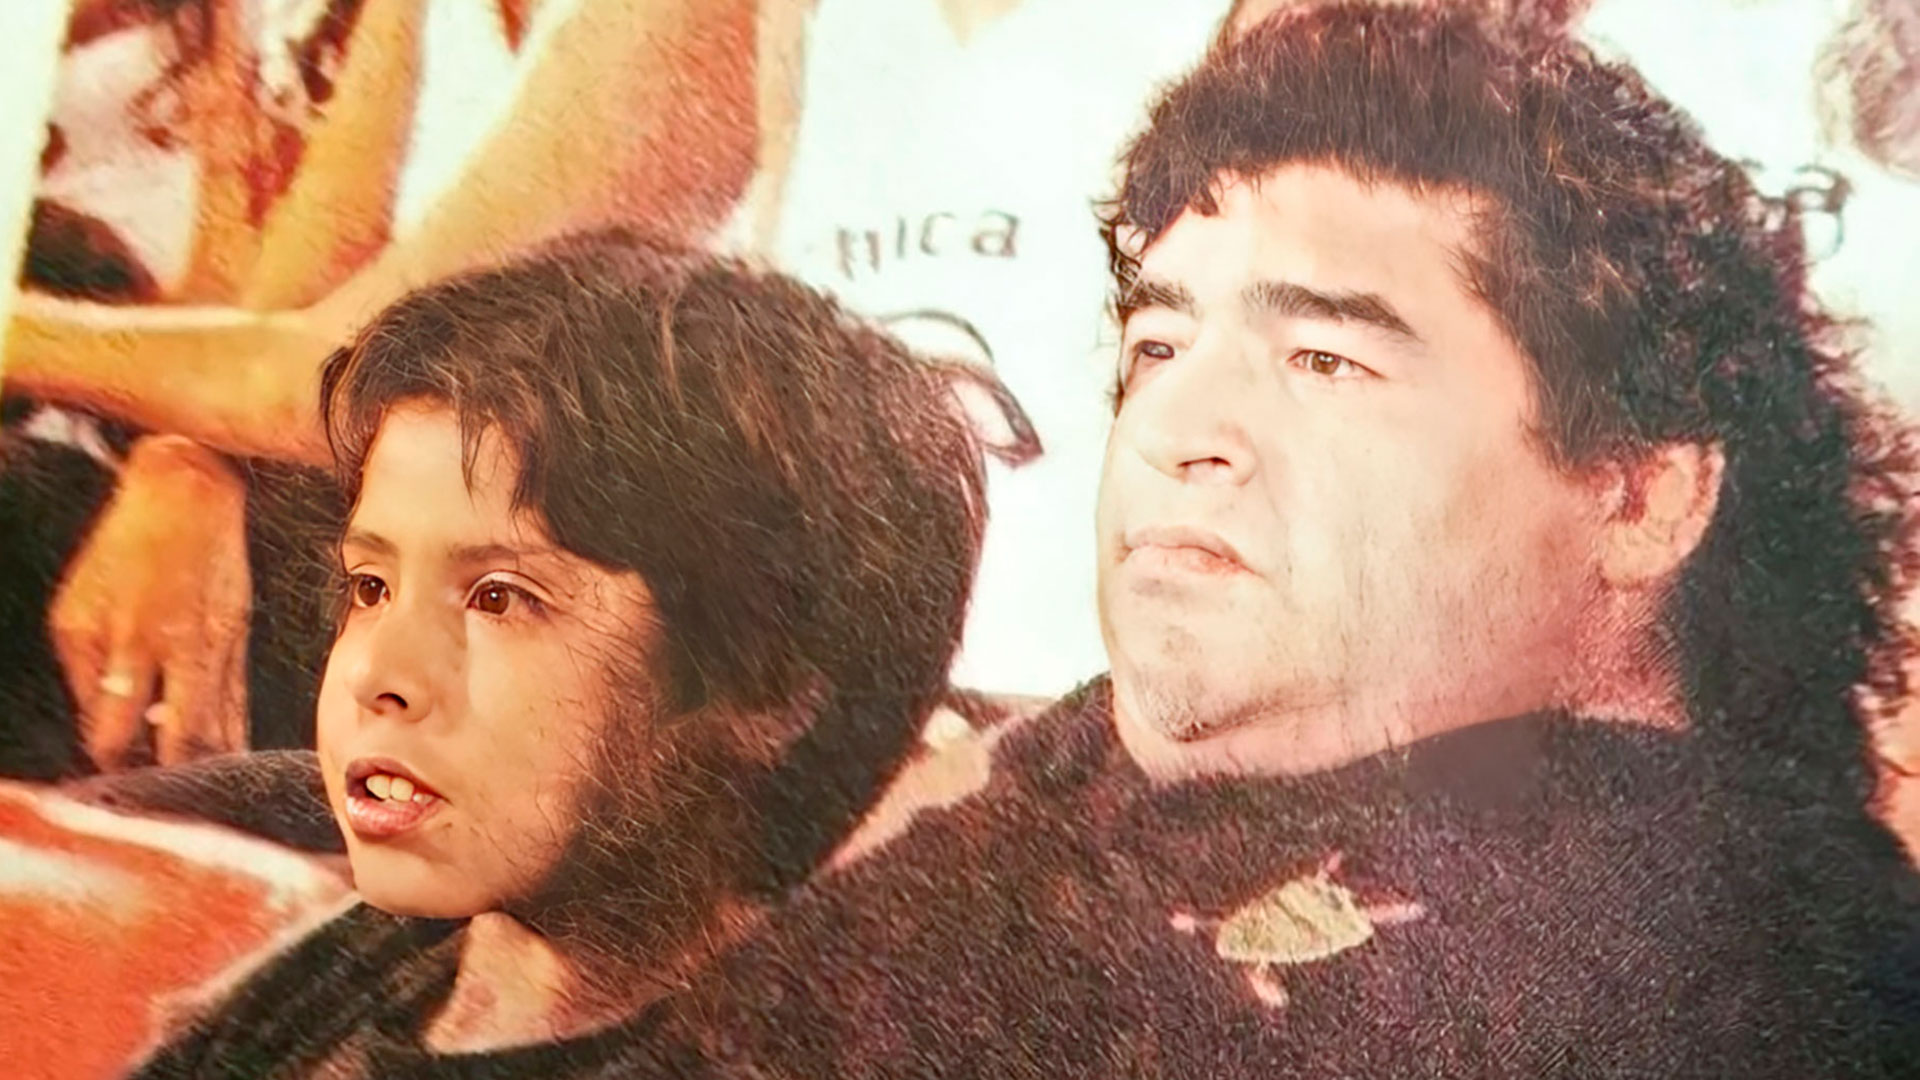 “Ayúdeme, no quiero, lo juré por Dalma y Giannina”: la historia jamás contada del abrazo que alejó a Maradona de sus demonios